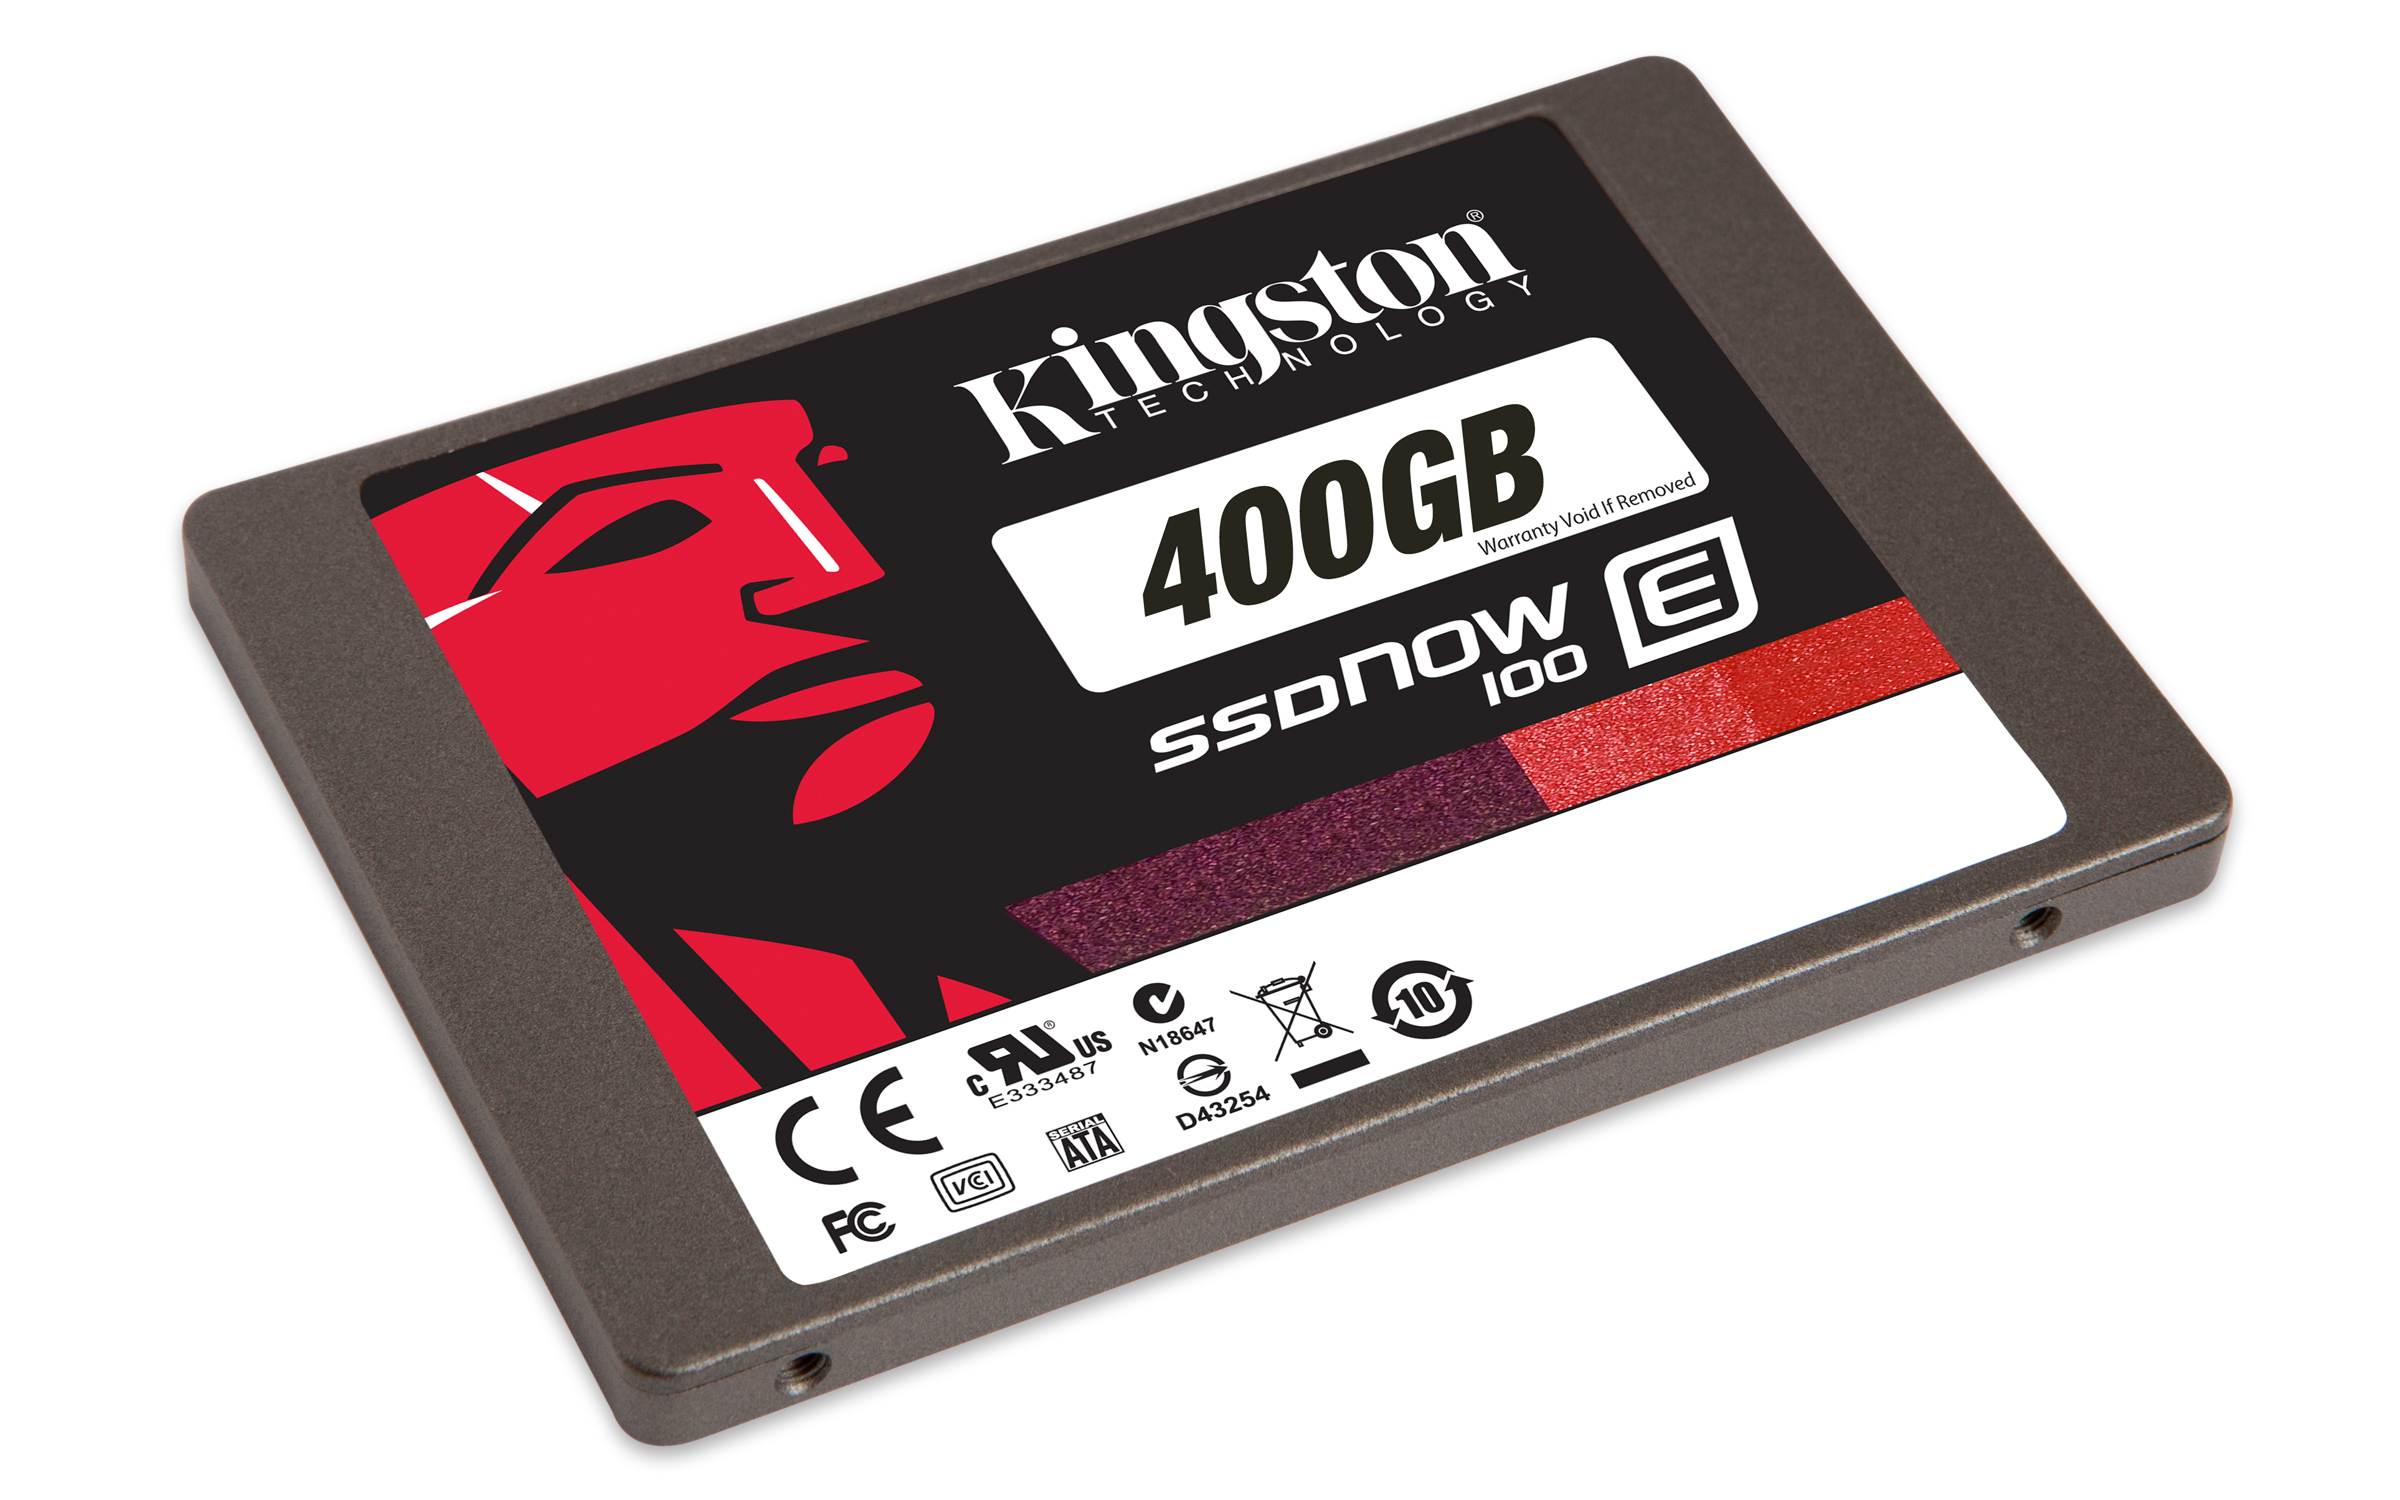 Immagine pubblicata in relazione al seguente contenuto: Kingston annuncia gli SSD E100 per applicazioni mission-critical | Nome immagine: news17933_kingston-e100-ssd_3.jpg